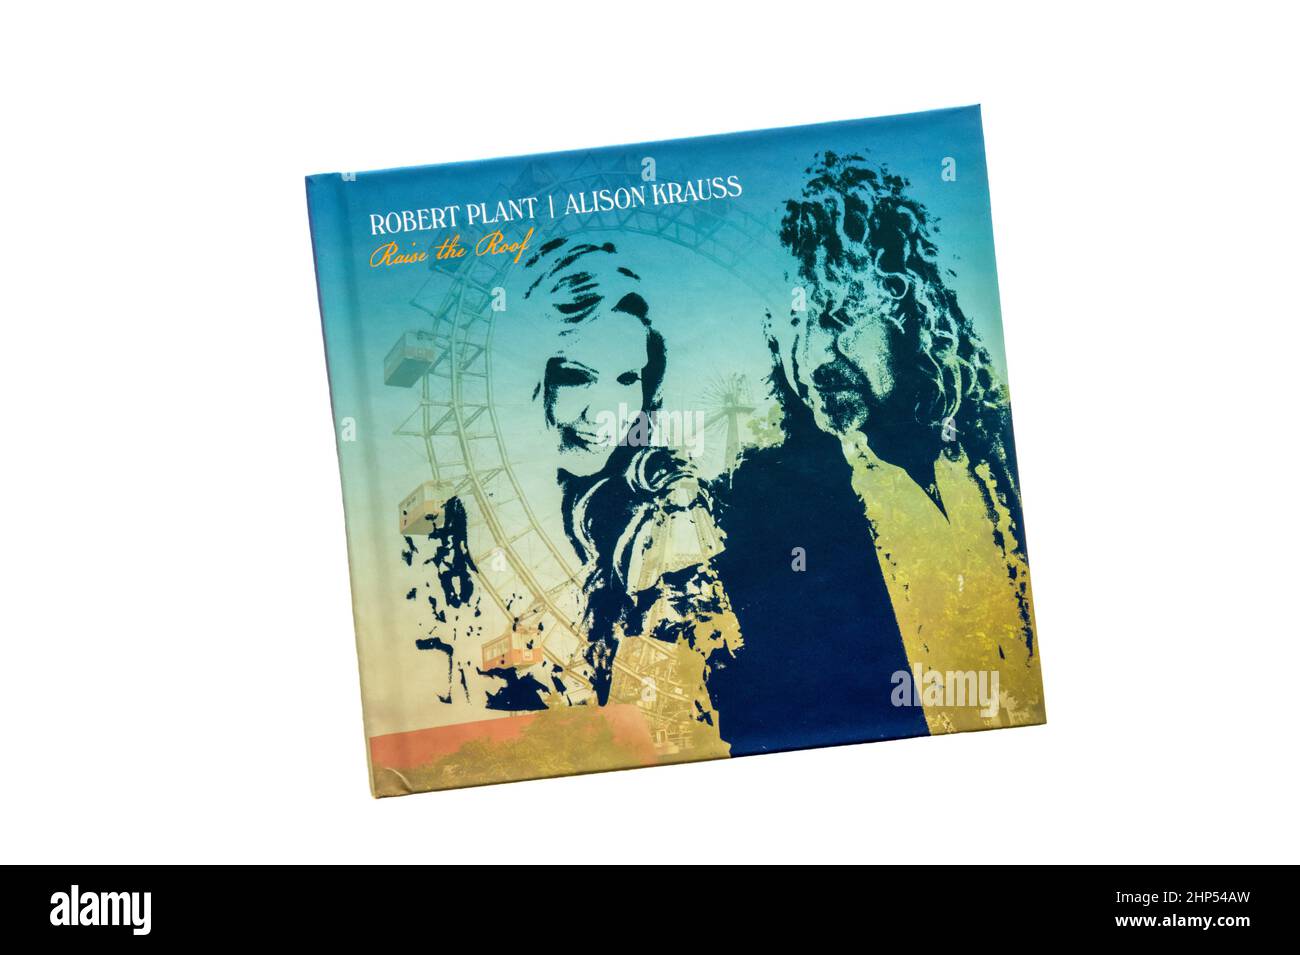 Raise The Roof fue el álbum de estudio de 2nd del cantante y compositor británico Robert Plant y la cantante estadounidense Alison Krauss. Fue lanzado en 2021. Foto de stock